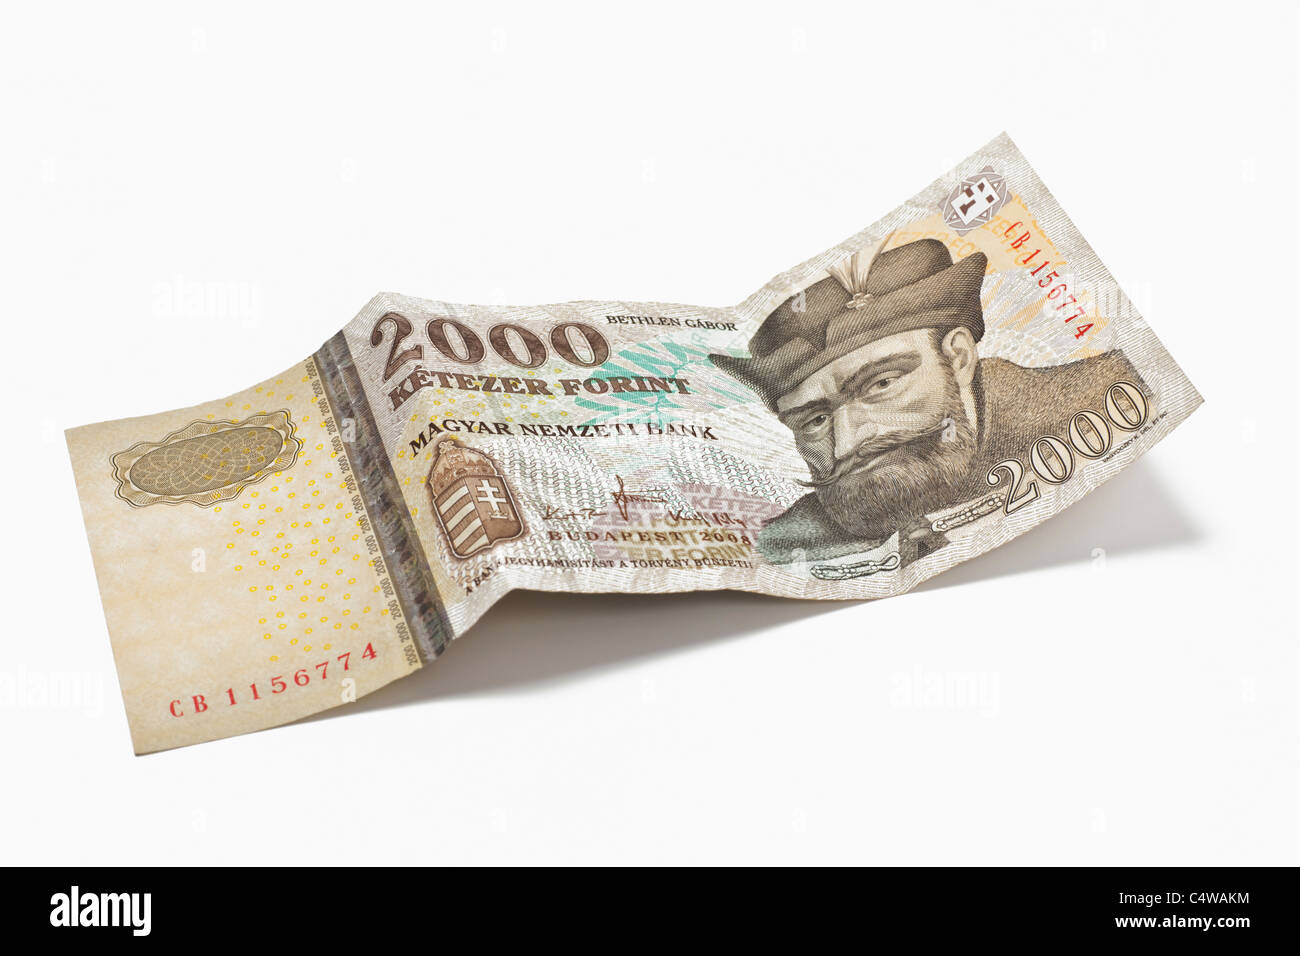 Von Detailansicht ungarischen Forint 2000 Billet de banque | photo détail d'un billet de forint hongrois 2000 Banque D'Images